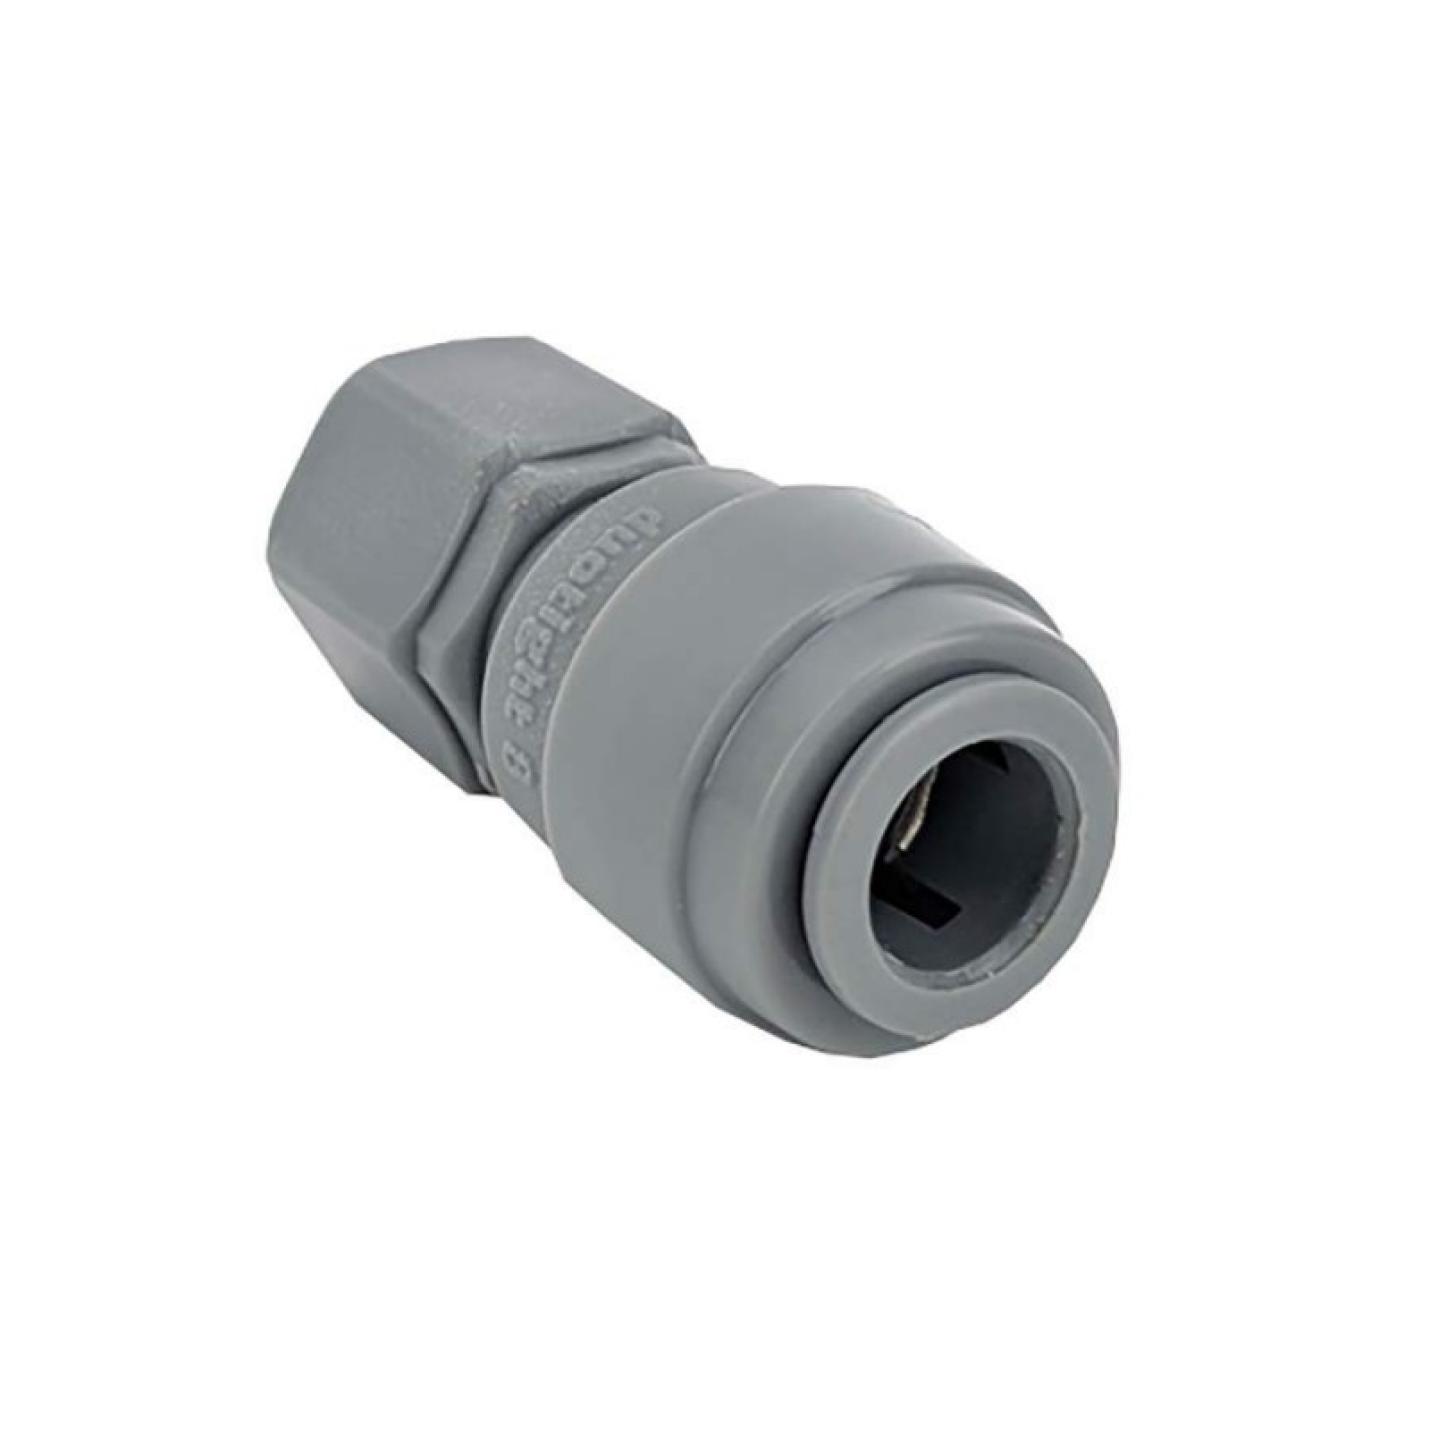 Duotight 8mm (5/16) push-in koppeling naar FFL koppeling